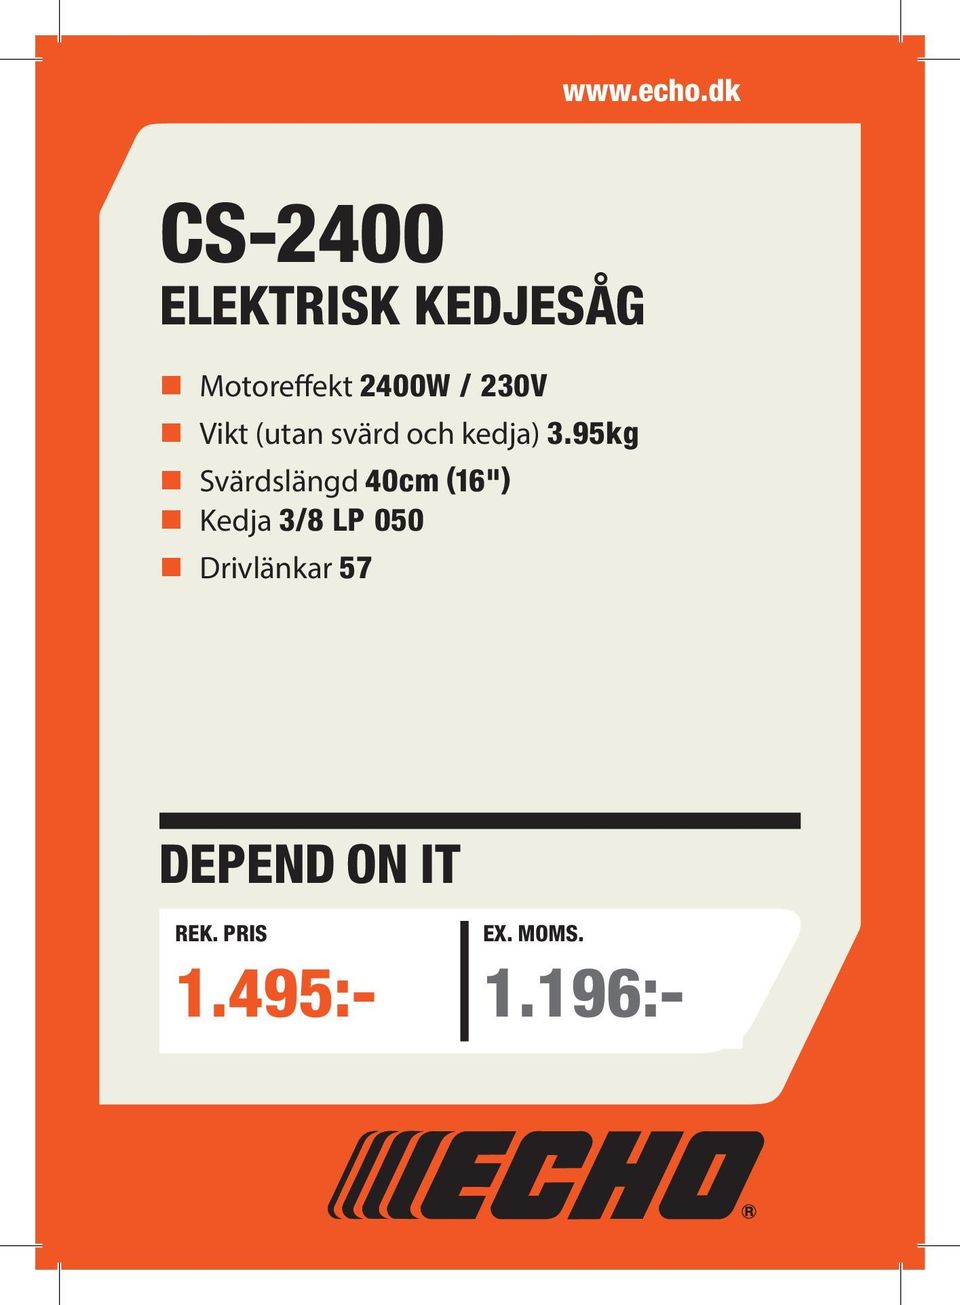 71kW LP 050 Length Drivlänkar w/o 57 cutting head 1460mm Fuel tank capacity 0.40 litres www.echo.